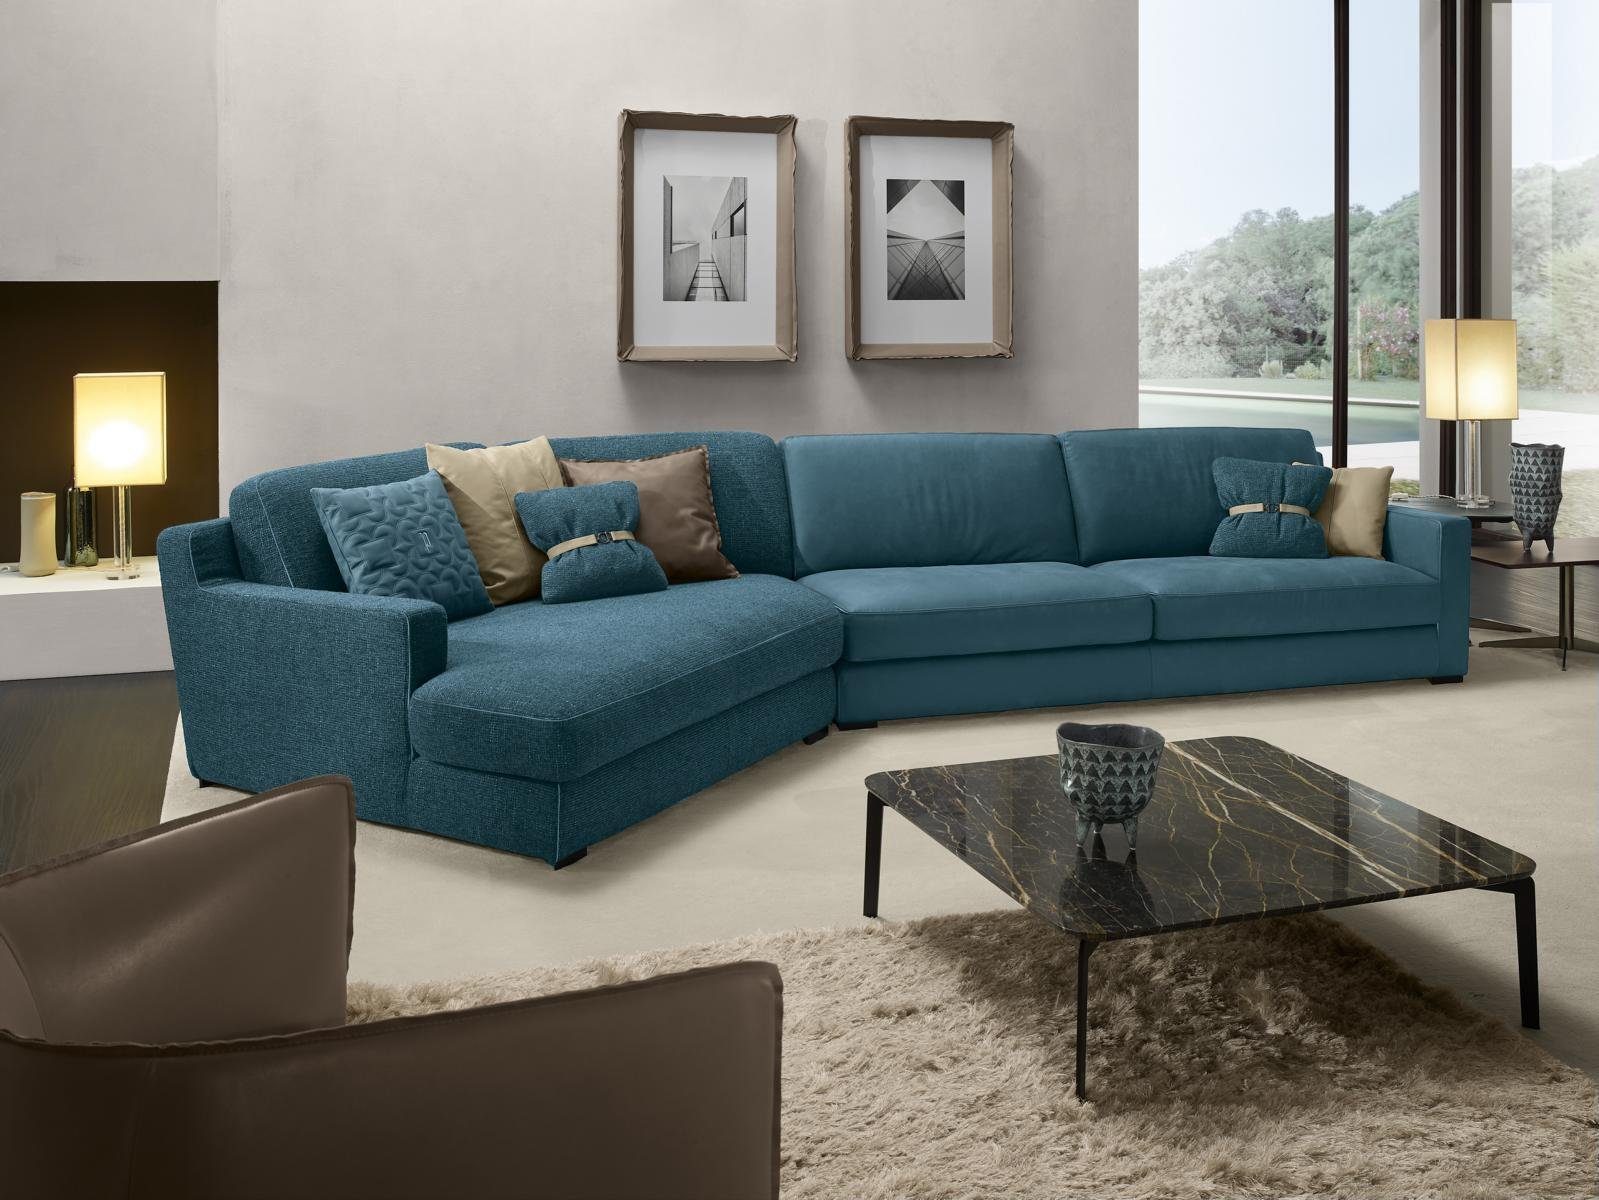 JVmoebel Ecksofa Design Sofa L Form Polster Couch Wohnzimmer Möbel Ecksofa Textil Blau